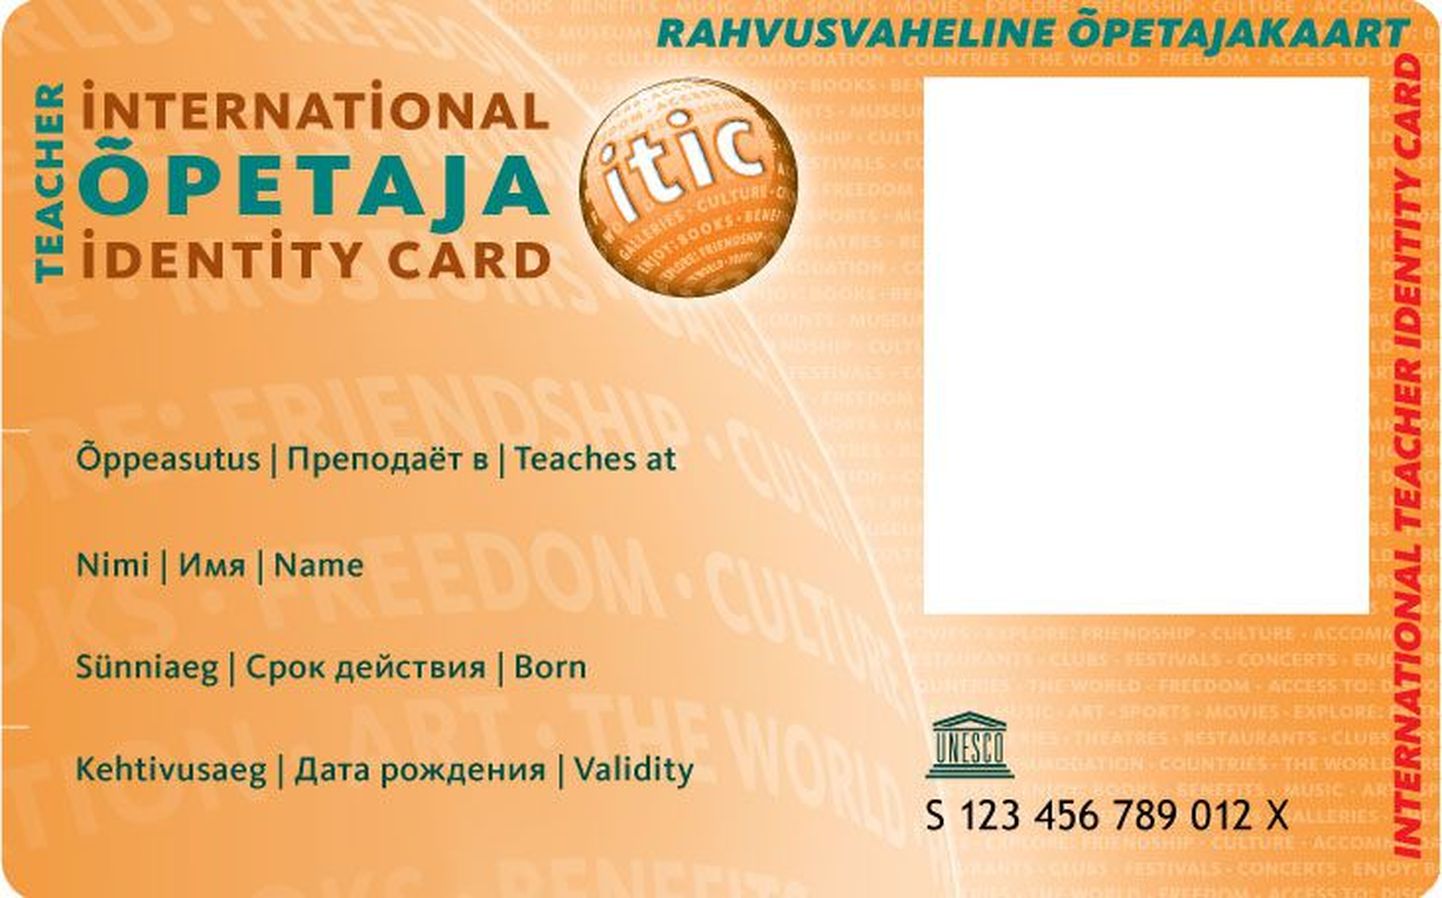 Isic-kaardid saavad uue kujunduse ja eestipärasemad nimed. Pildil tudengi- ja õpetajakaart.